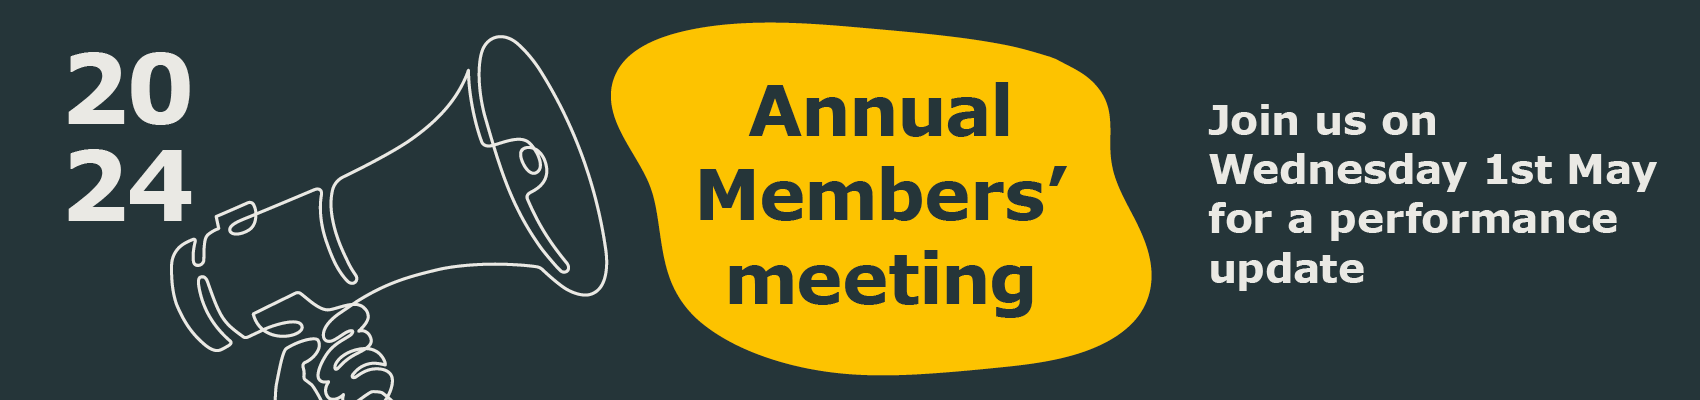 Members' meeting